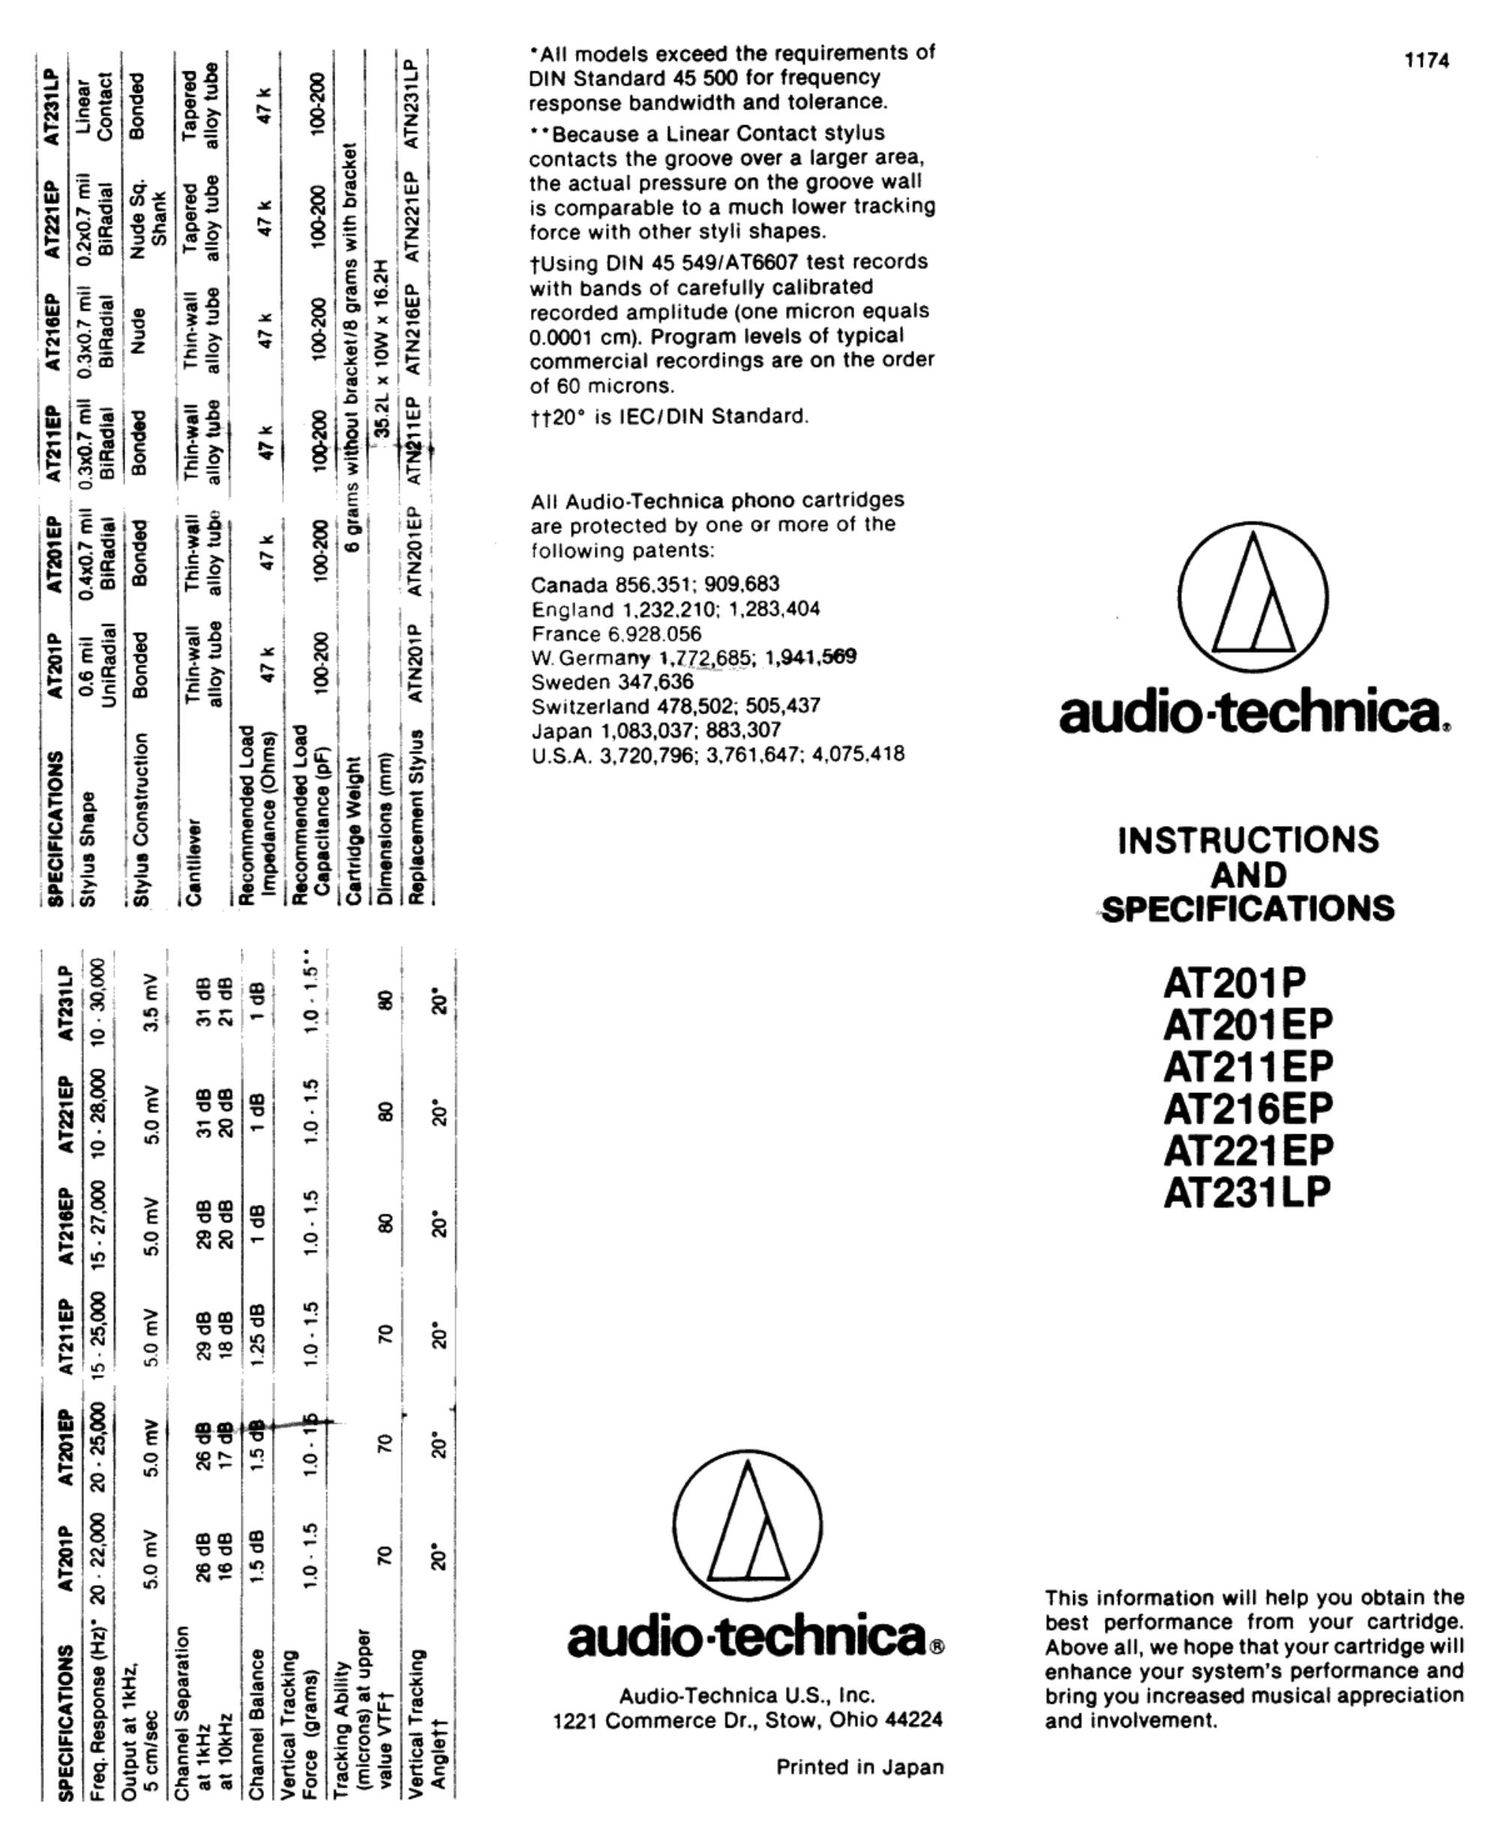 Audio Technica AT231 LP